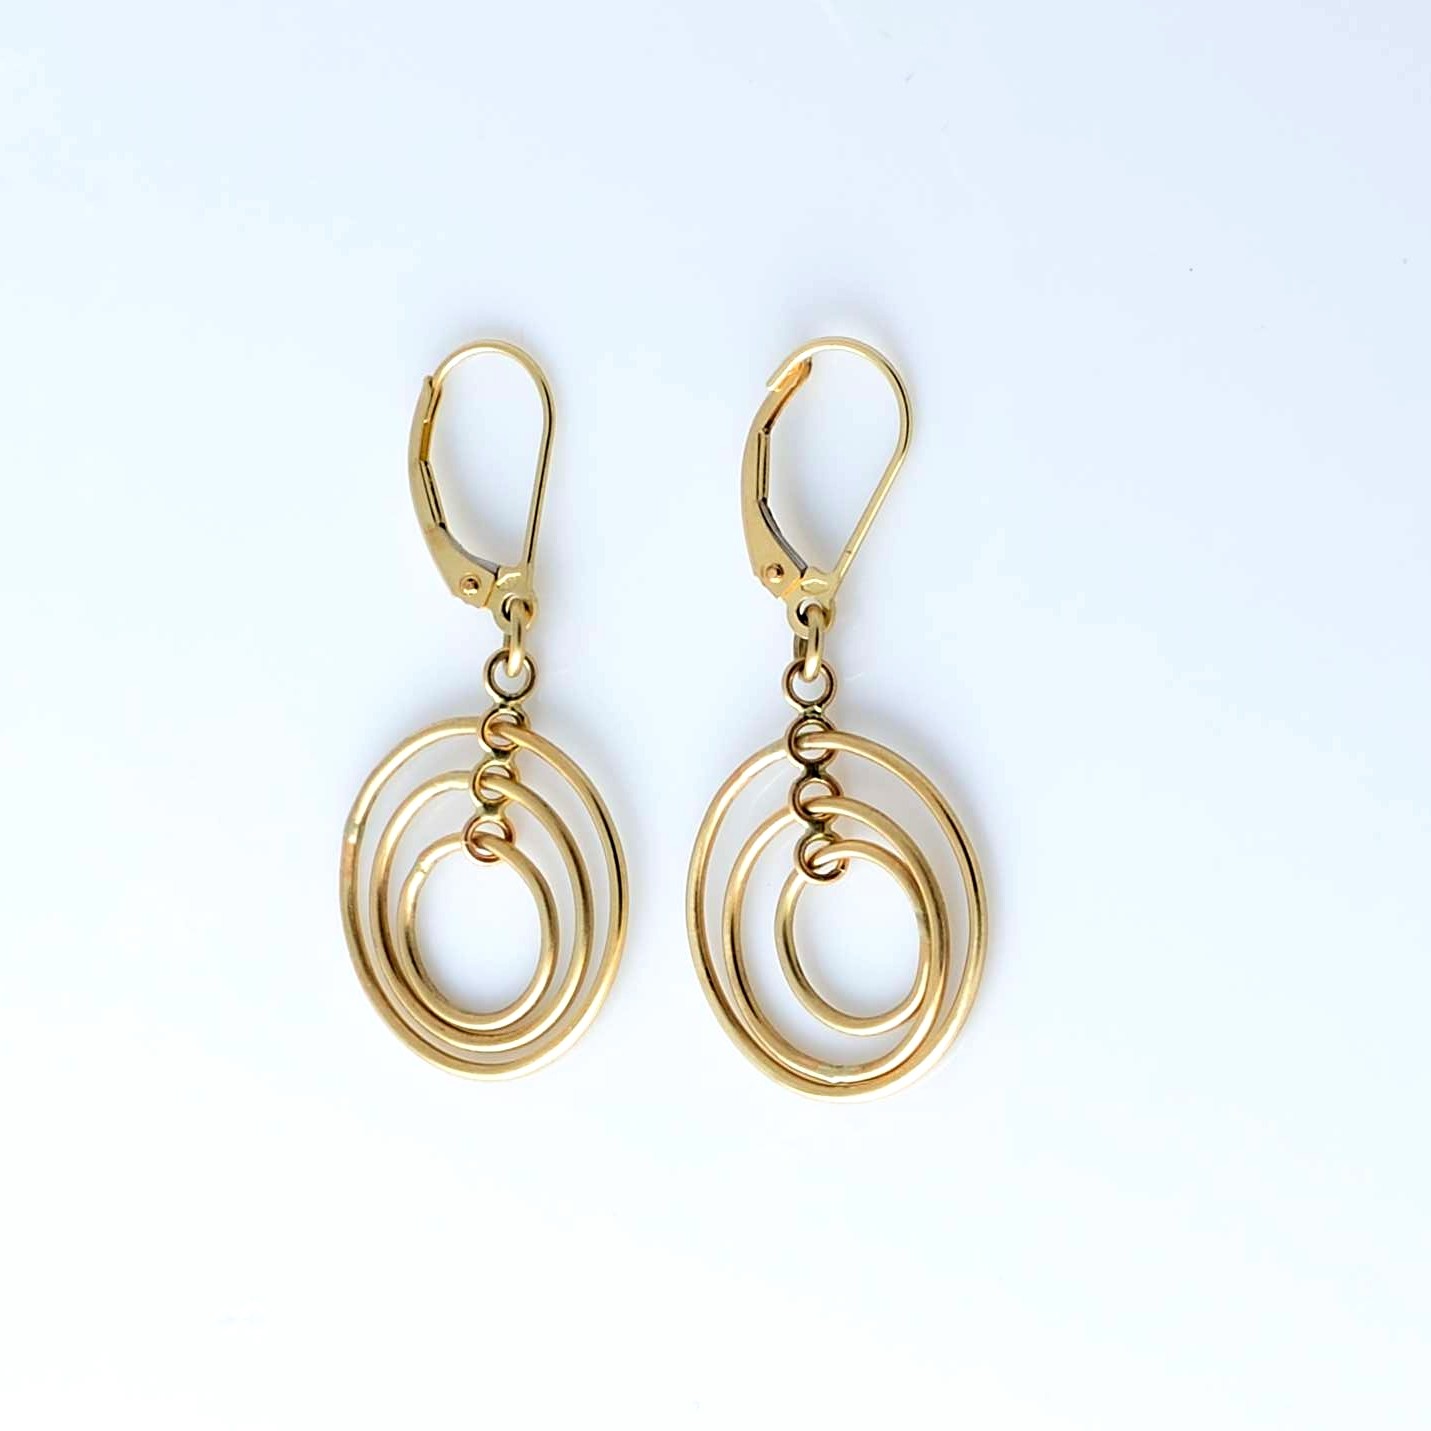 Cochlear gold earrings